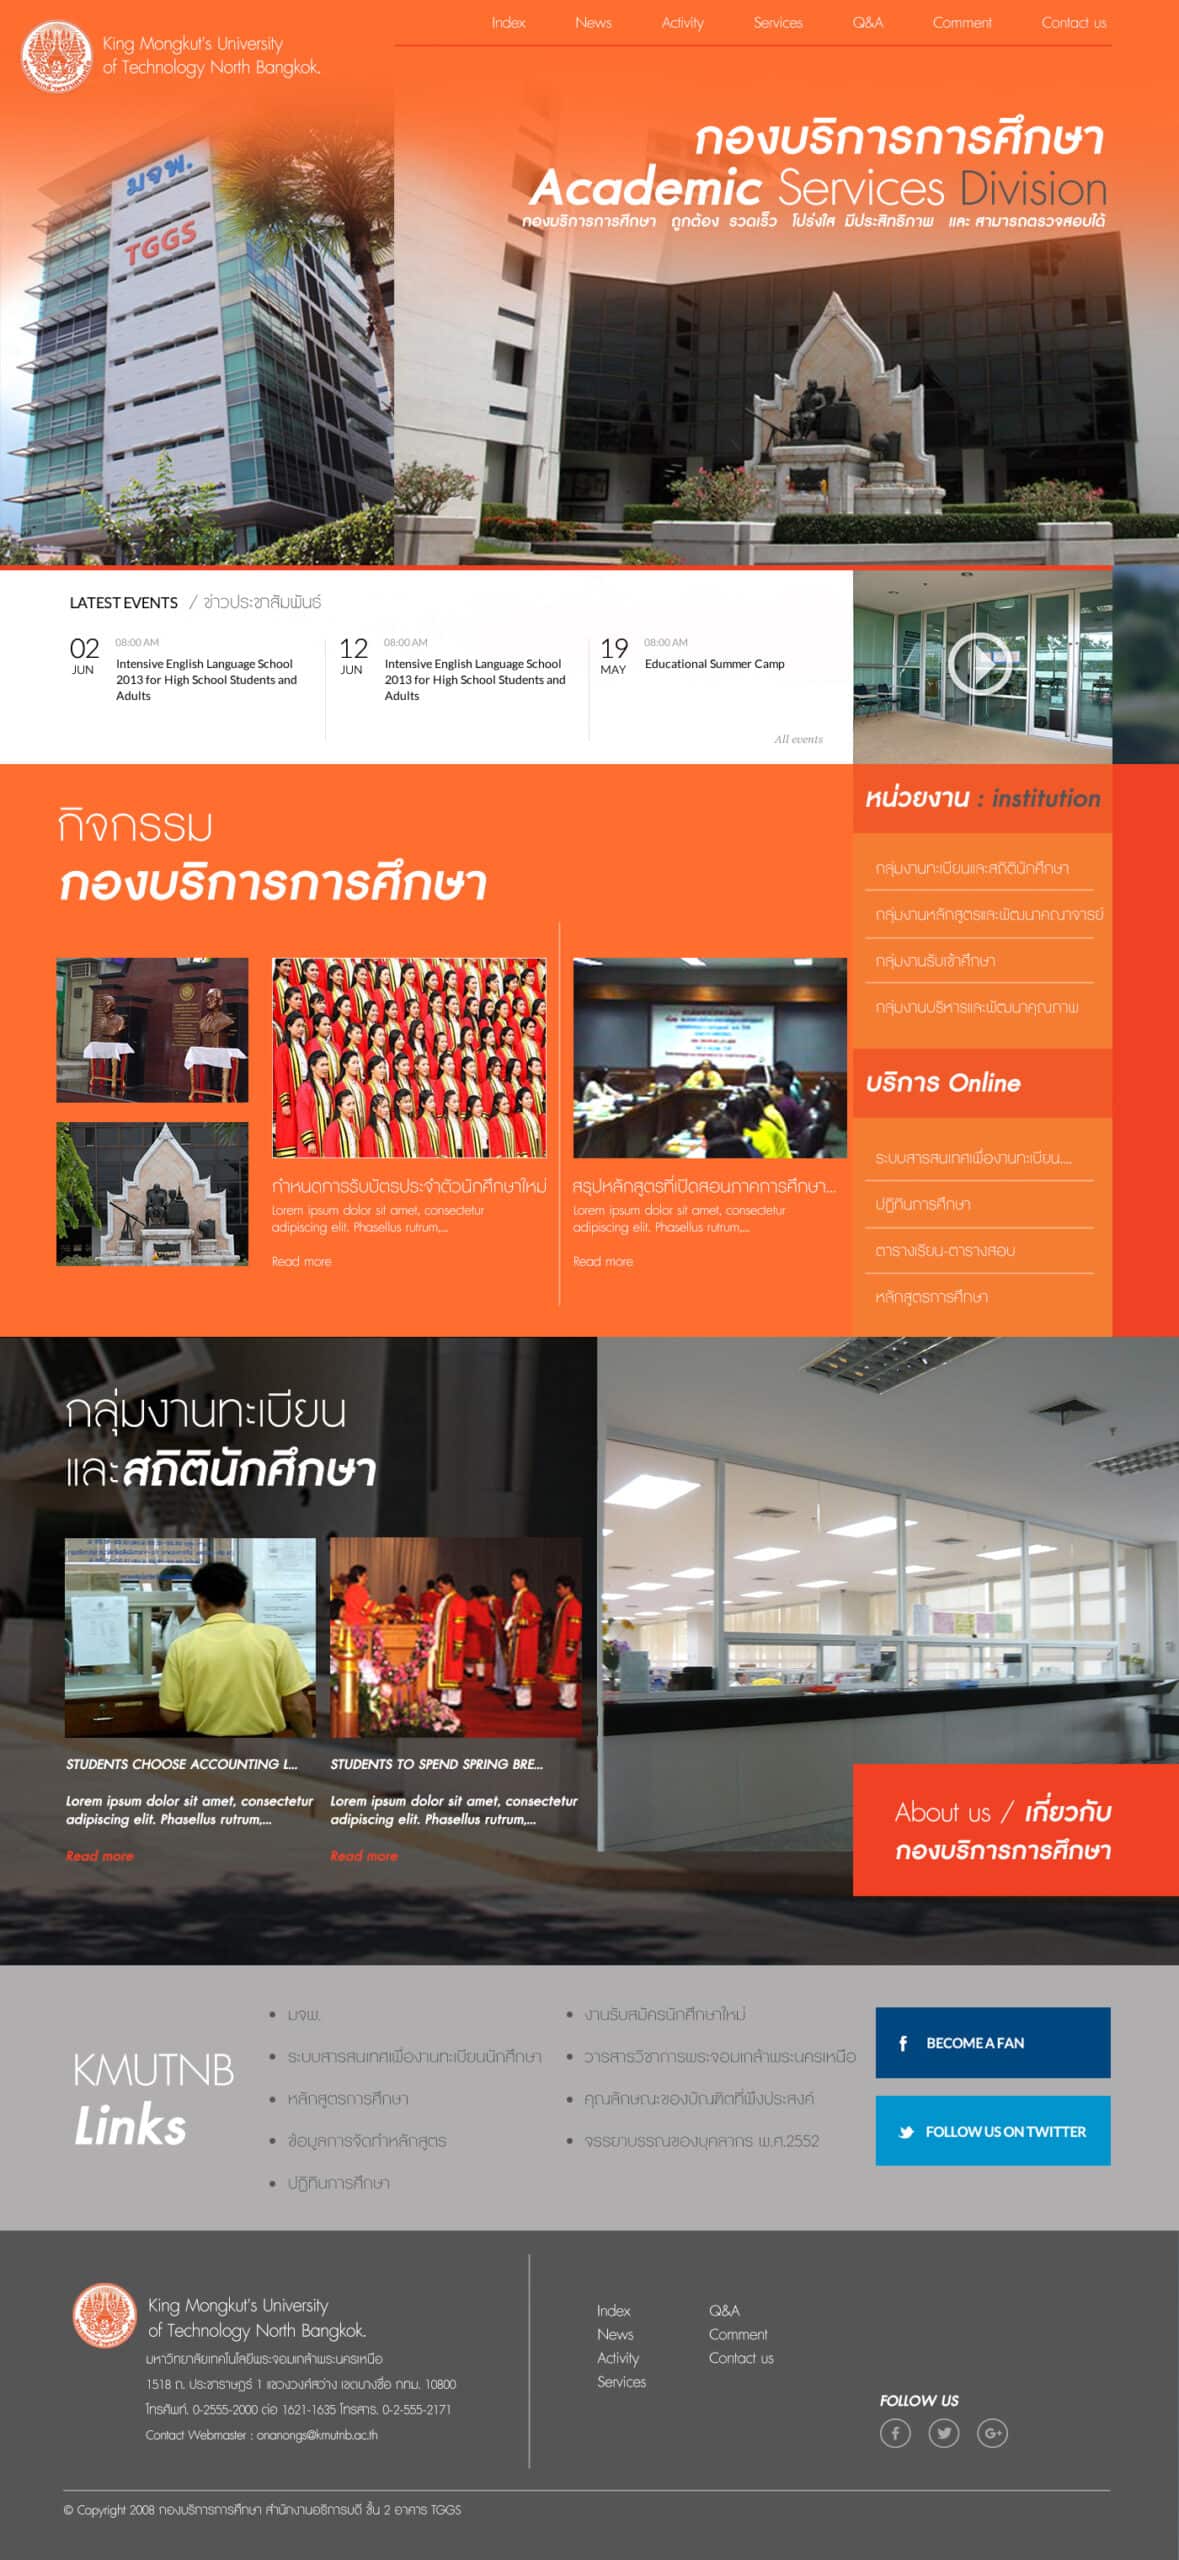 ออกแบบเว็บไซต์ราชการ กองบริการการศึกษา มจพ